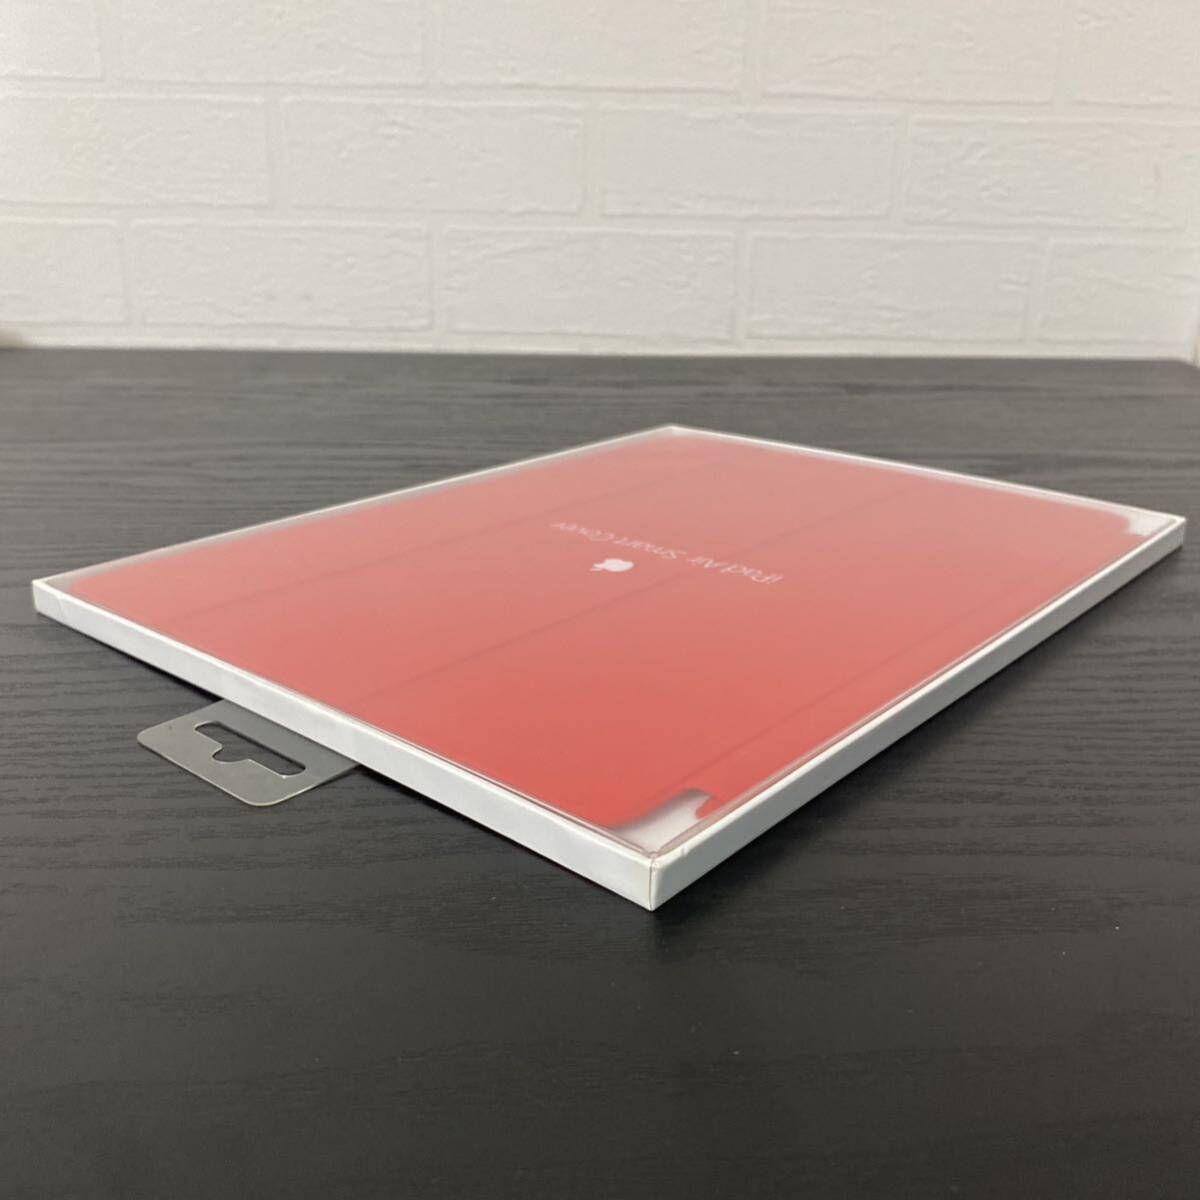 新品未開封☆アップル純正 iPad Air Smart Cover (PRODUCT)RED レッド MGTP2FE/A スマートカバー/Apple